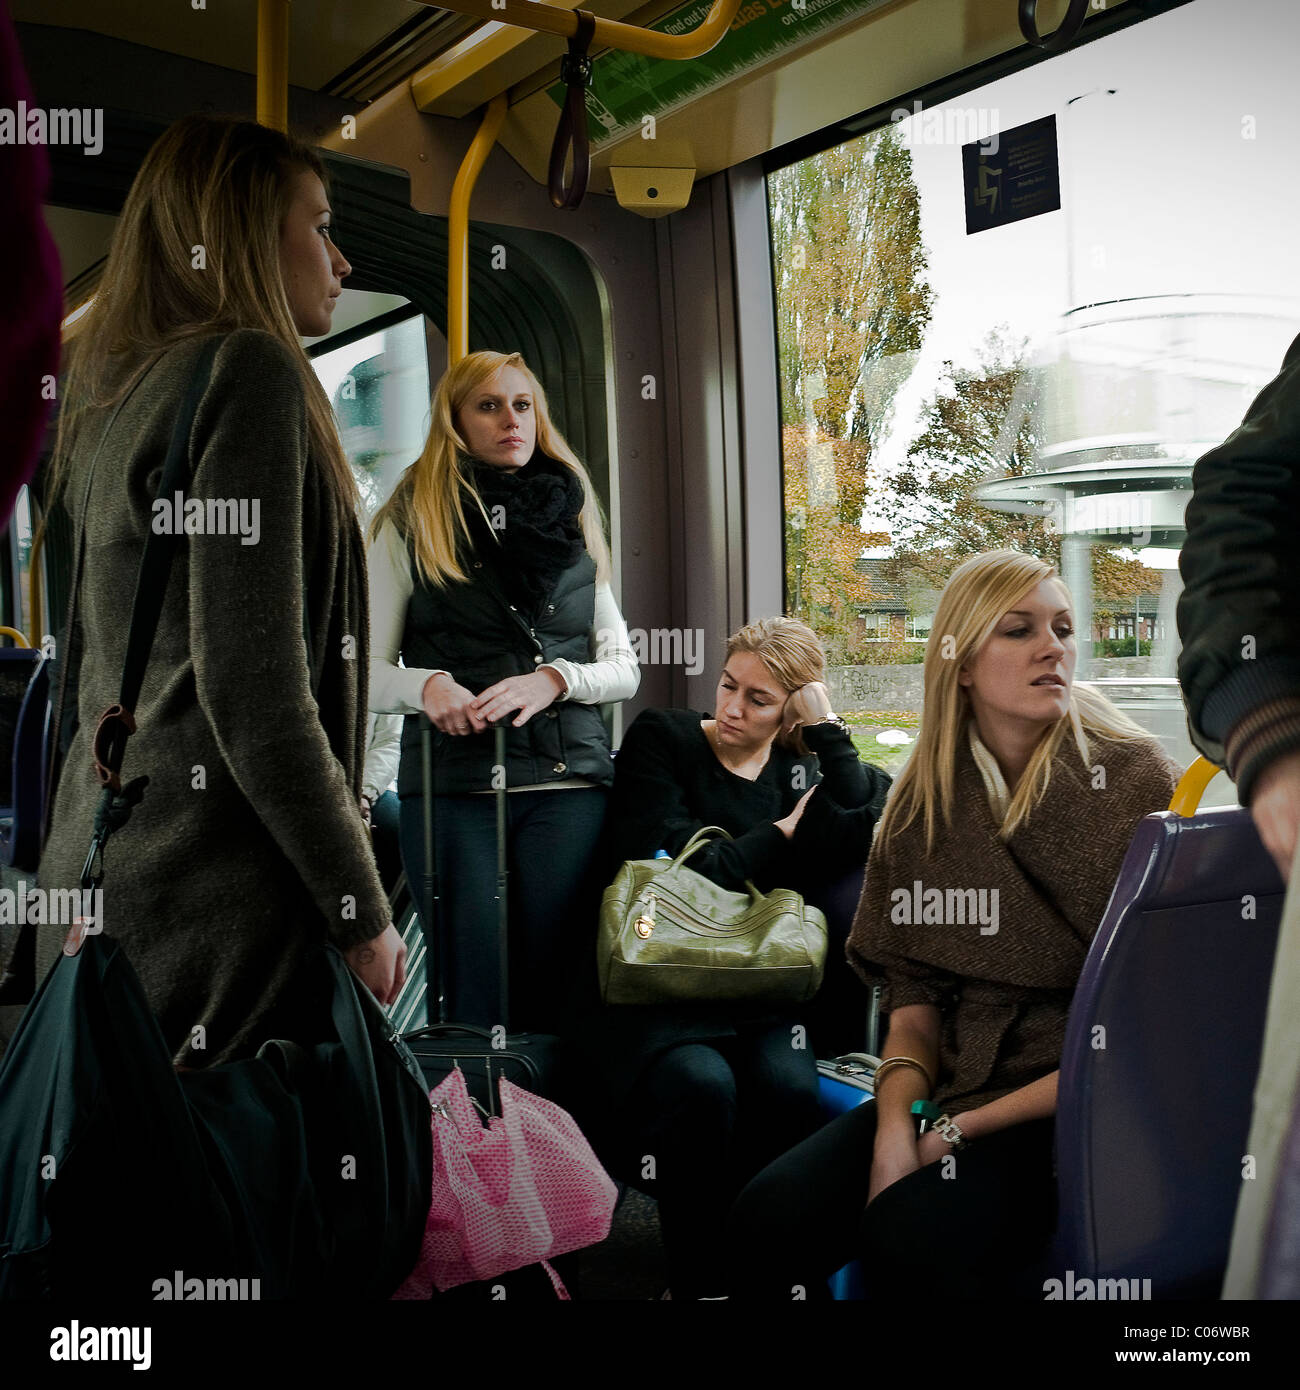 Frauen auf der Luas tram System in Dublin Irland. Stockfoto